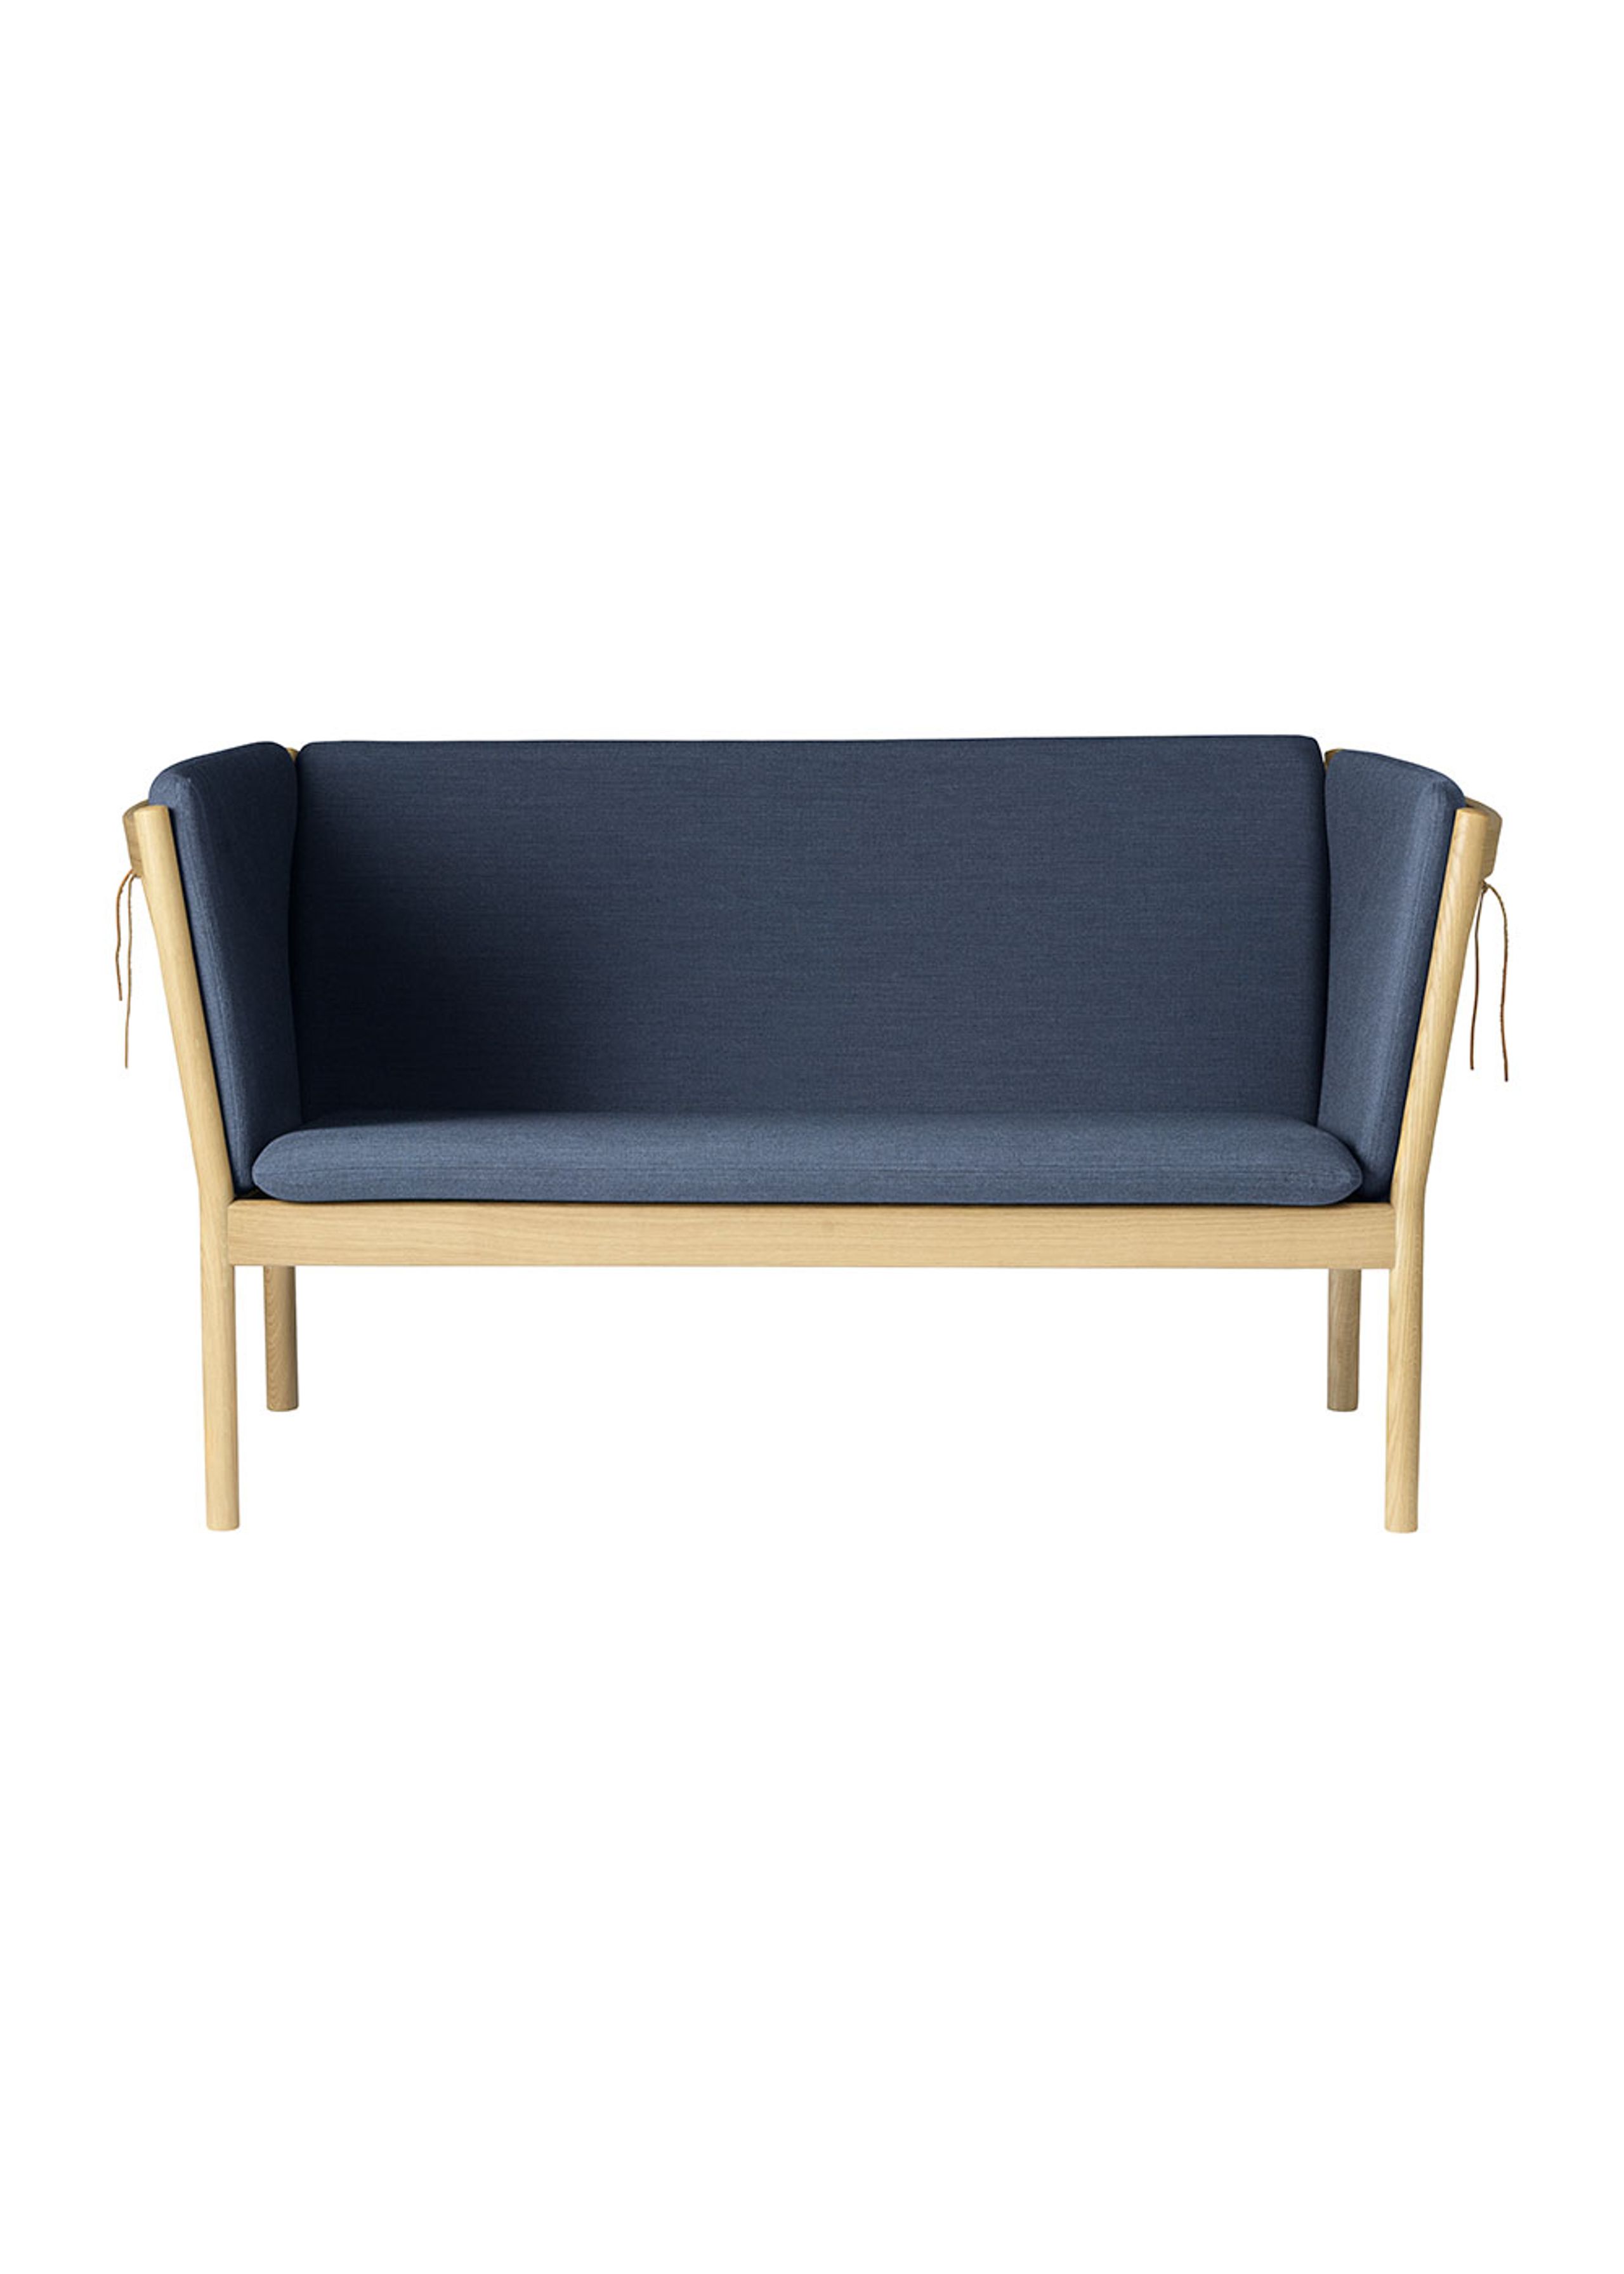 FDB Møbler / Furniture - Sofa - J148 2 pers by Erik Ole Jørgensen - Eg, Natur, Lakeret / Uld, Mørkeblå